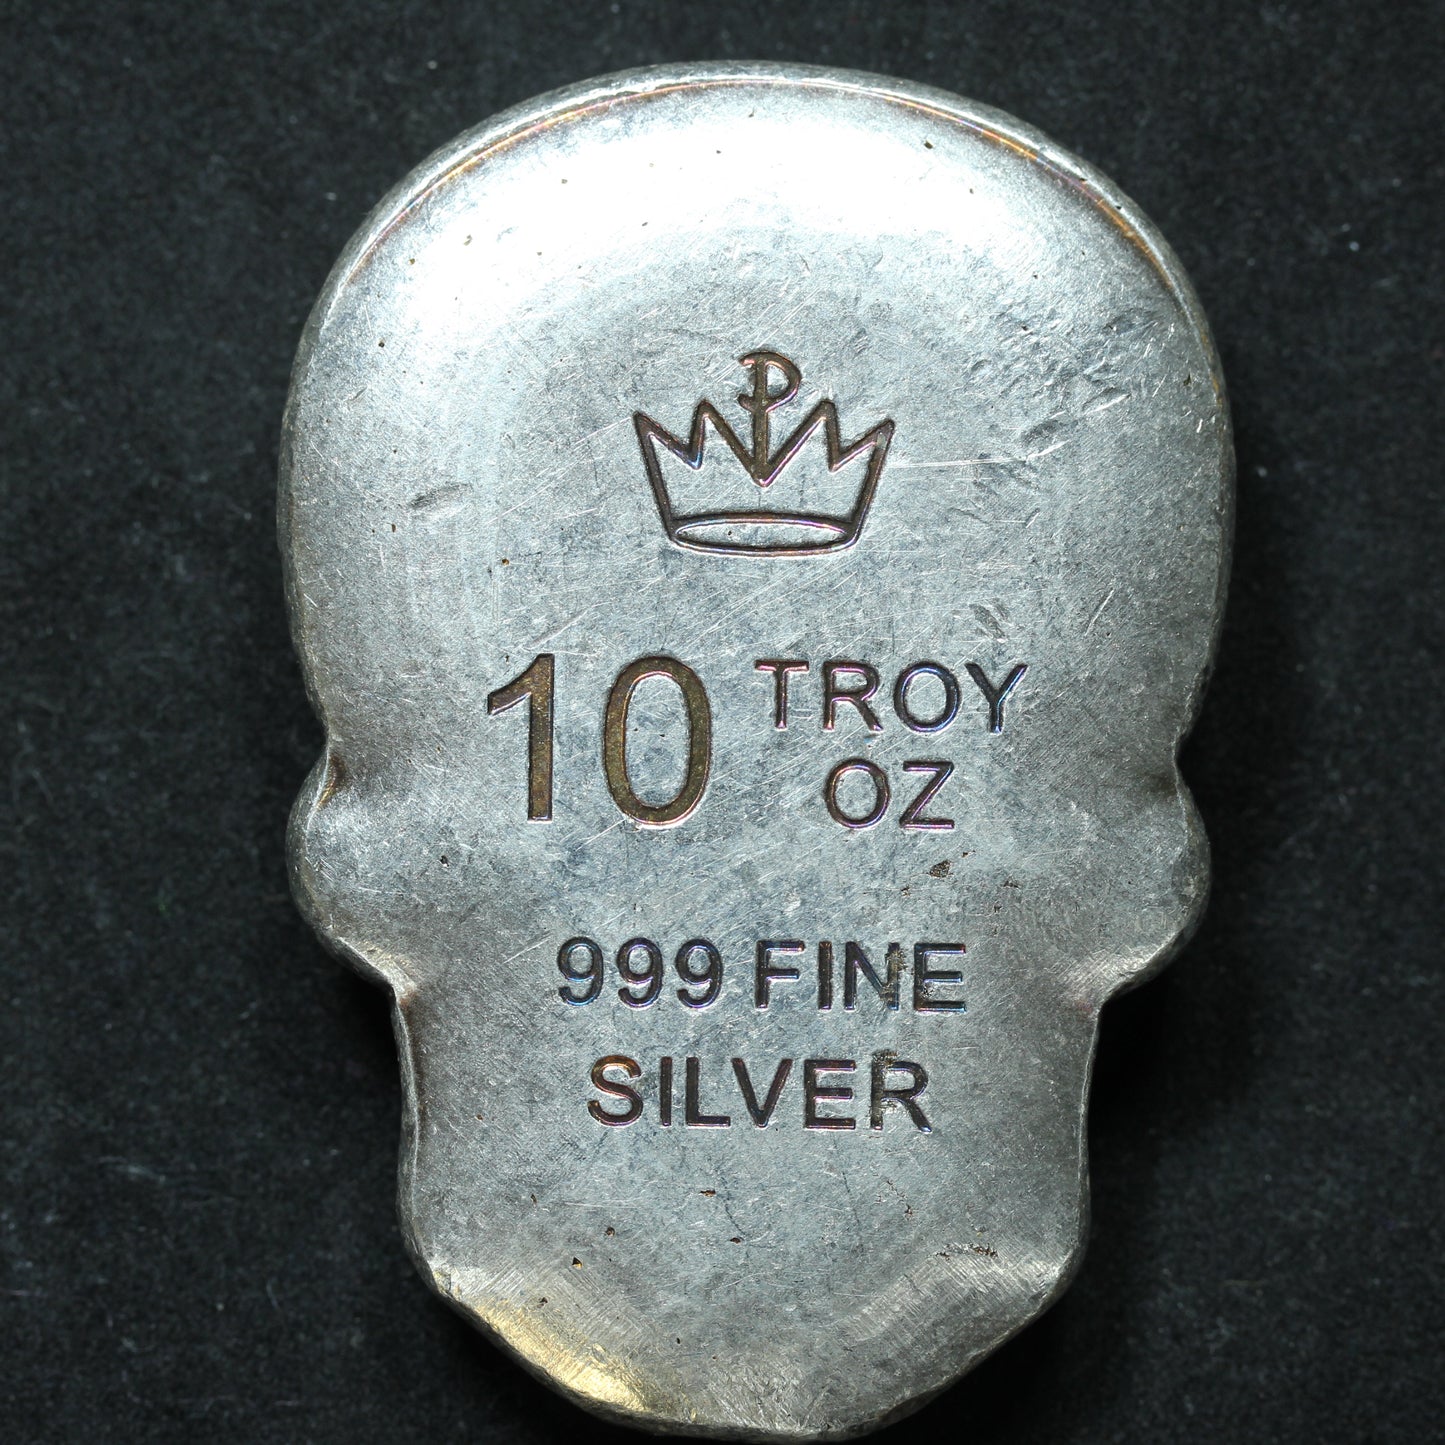 10 oz .999 Fine Silver Skull - Monarch Precious Metals Day of the Dead Heart Skull